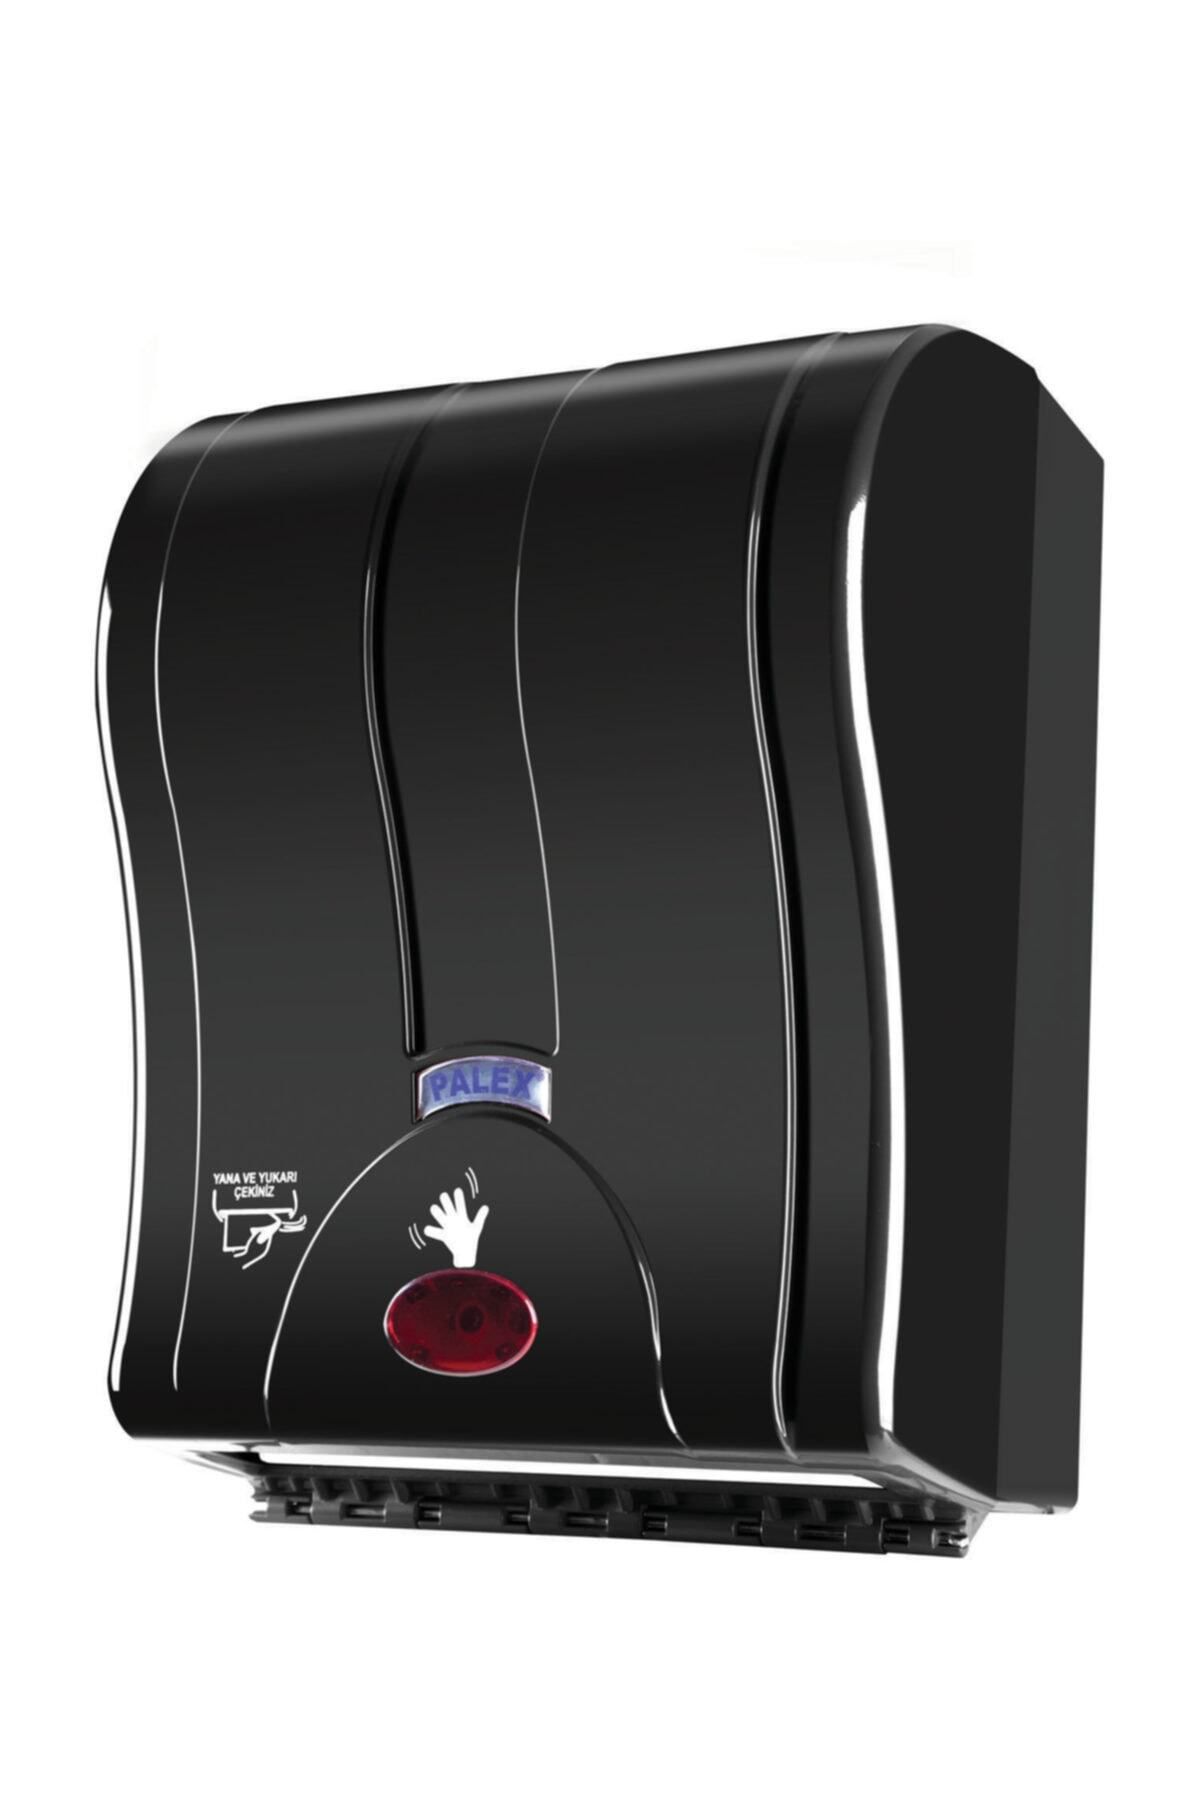 Palex Sensörlü Otomatik Havlu Makinası Siyah